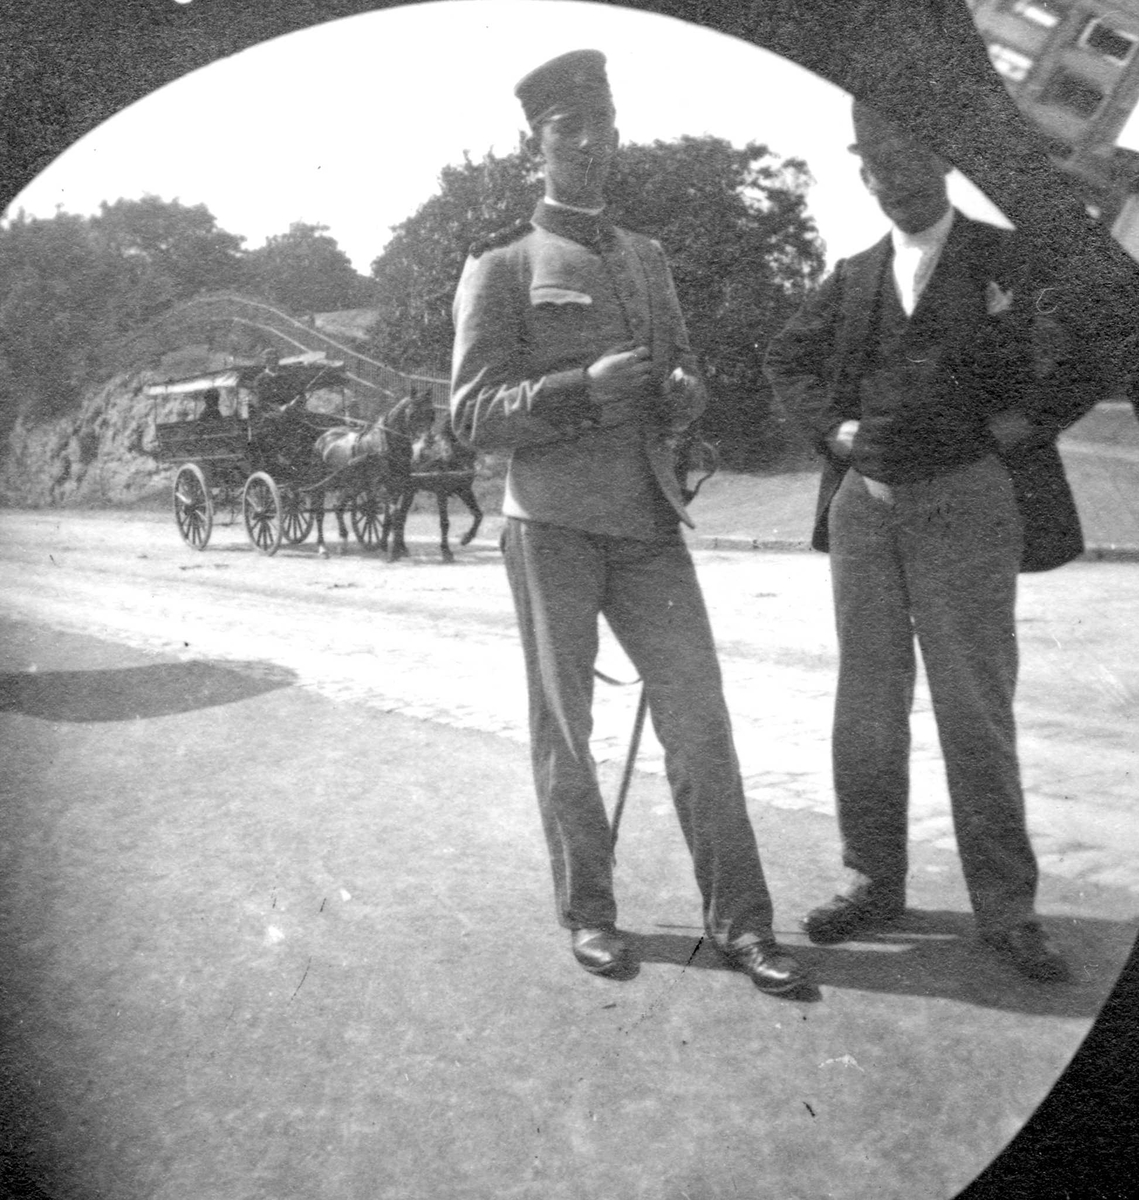 Løytnant Hans Hals med uniform og Michael Clauson ved gate, Oslo, med hestekjøretøy. Park på den andre siden av gata. Drammensveien?

